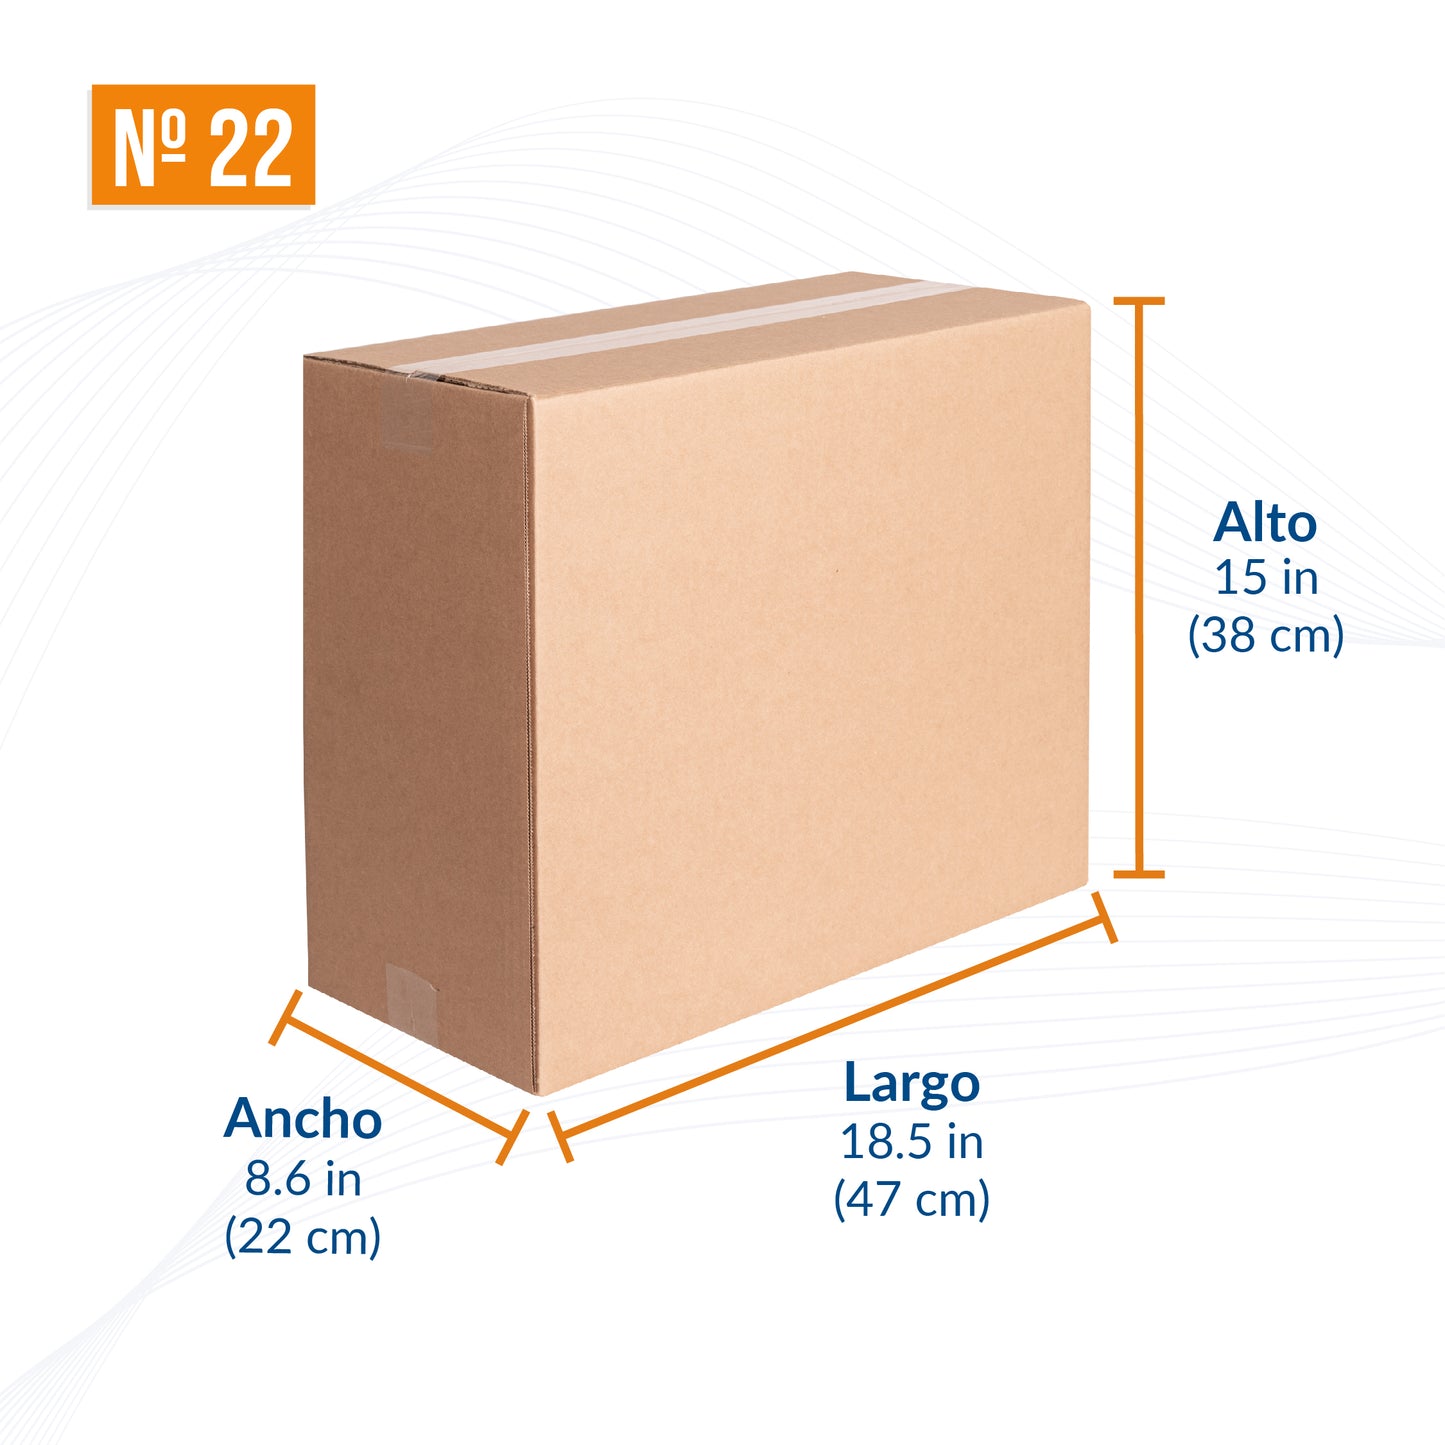 Cajas de cartón para envíos #22